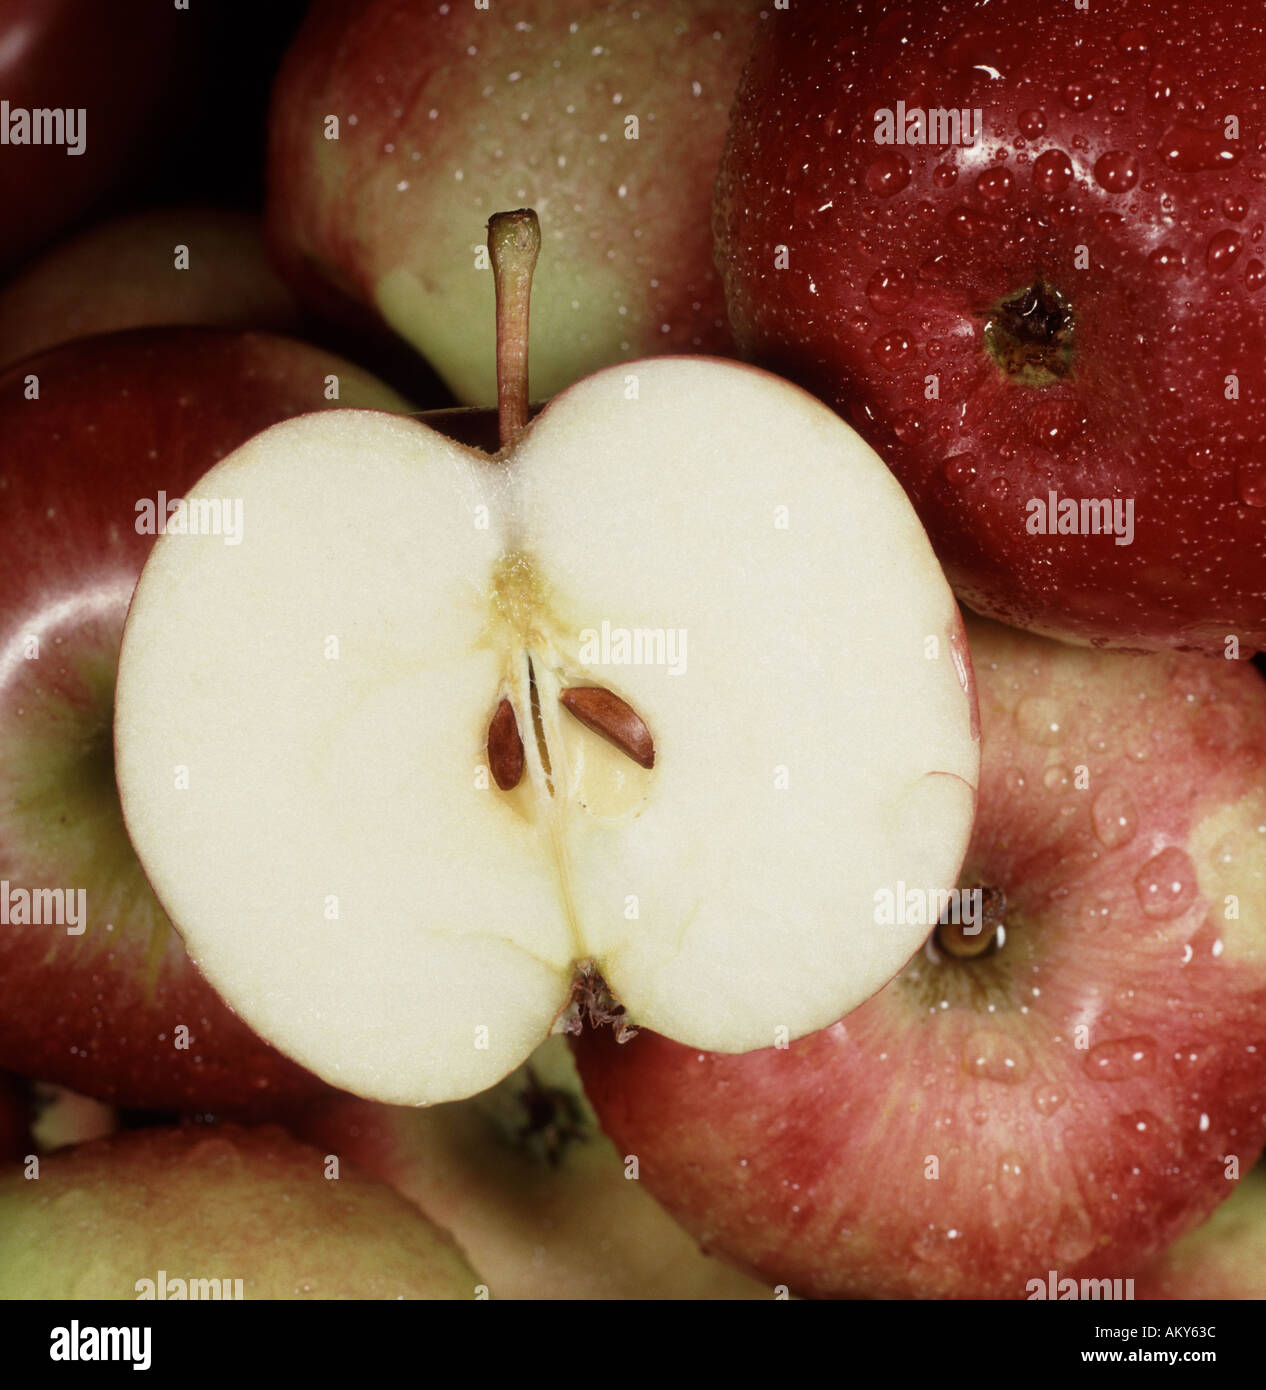 Close up de pommes rouges avec un coupé en deux avec les gouttelettes d'eau sur le fruit Banque D'Images